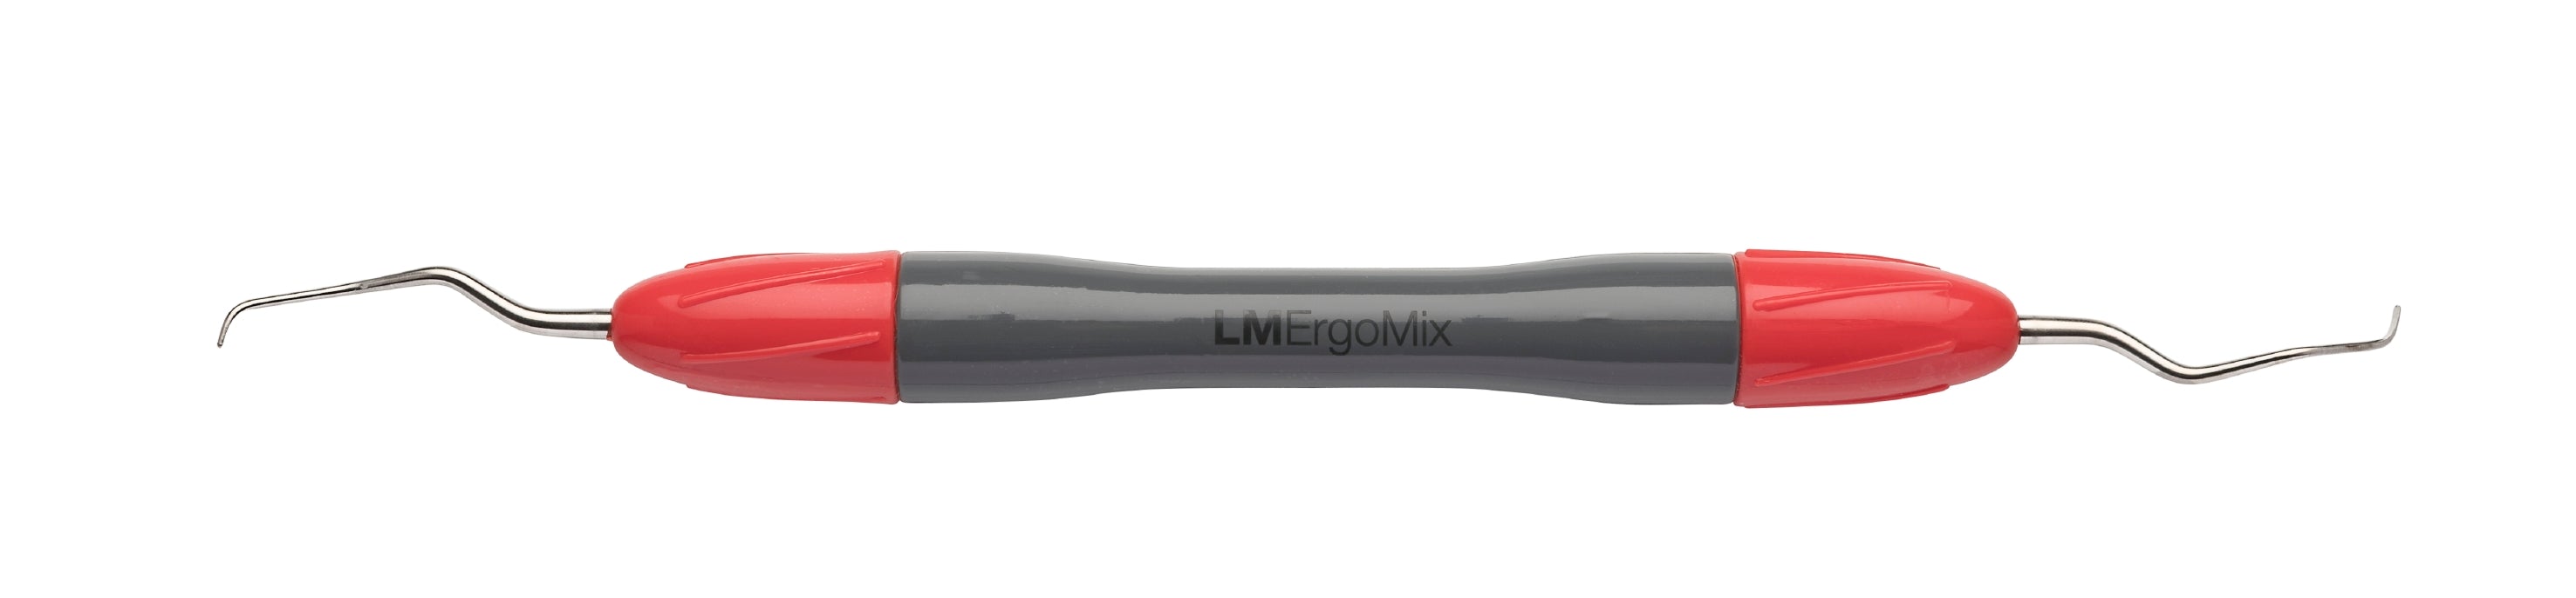 LM 283-284MTIEM Implant Mini Universal Curette, Posterior/Anterior